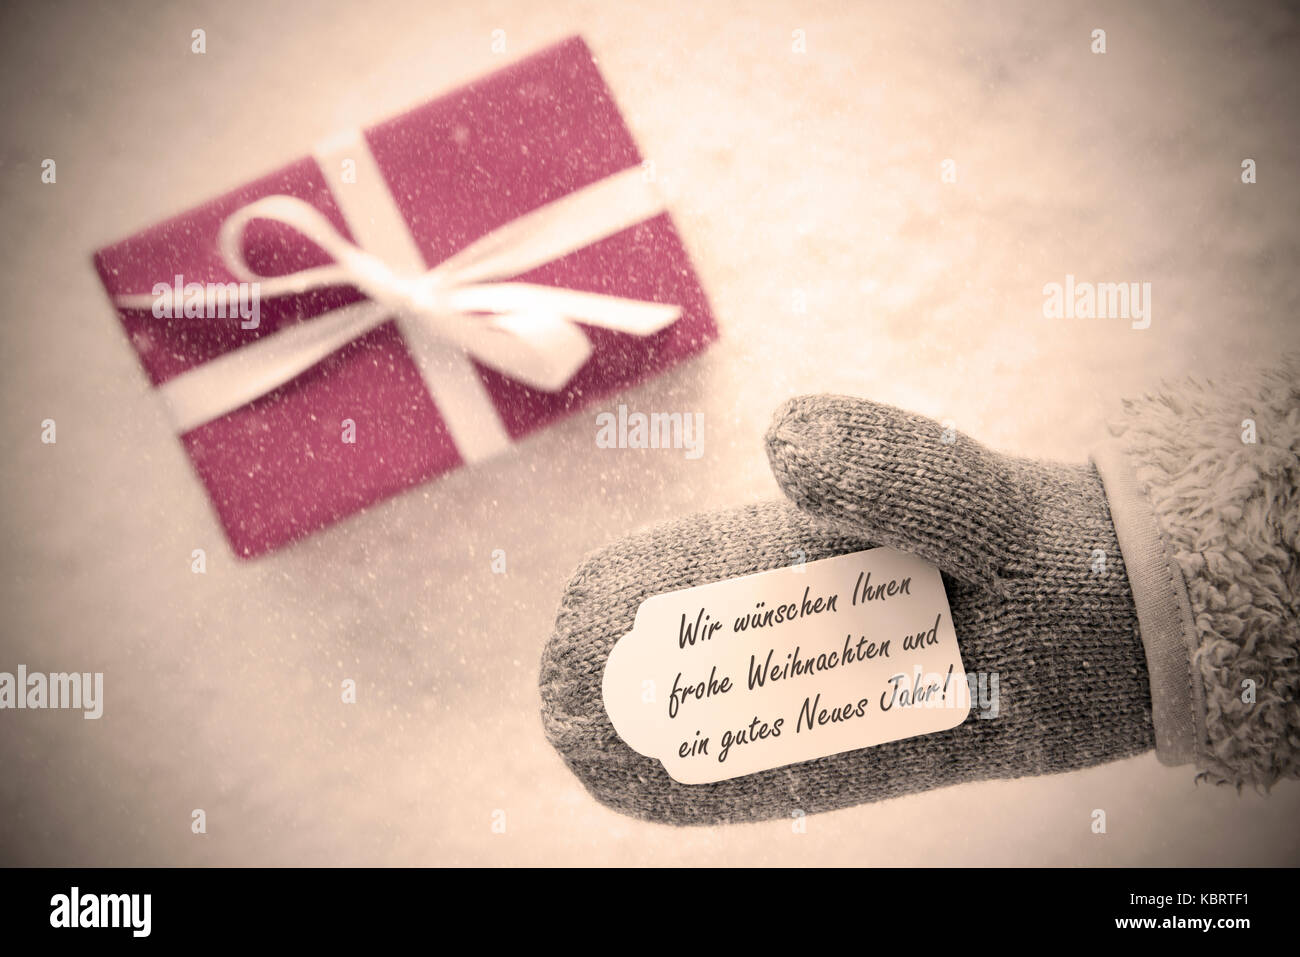 Cadeau rose, gant, gutes neues jahr, happy new year, filtre instagram Banque D'Images